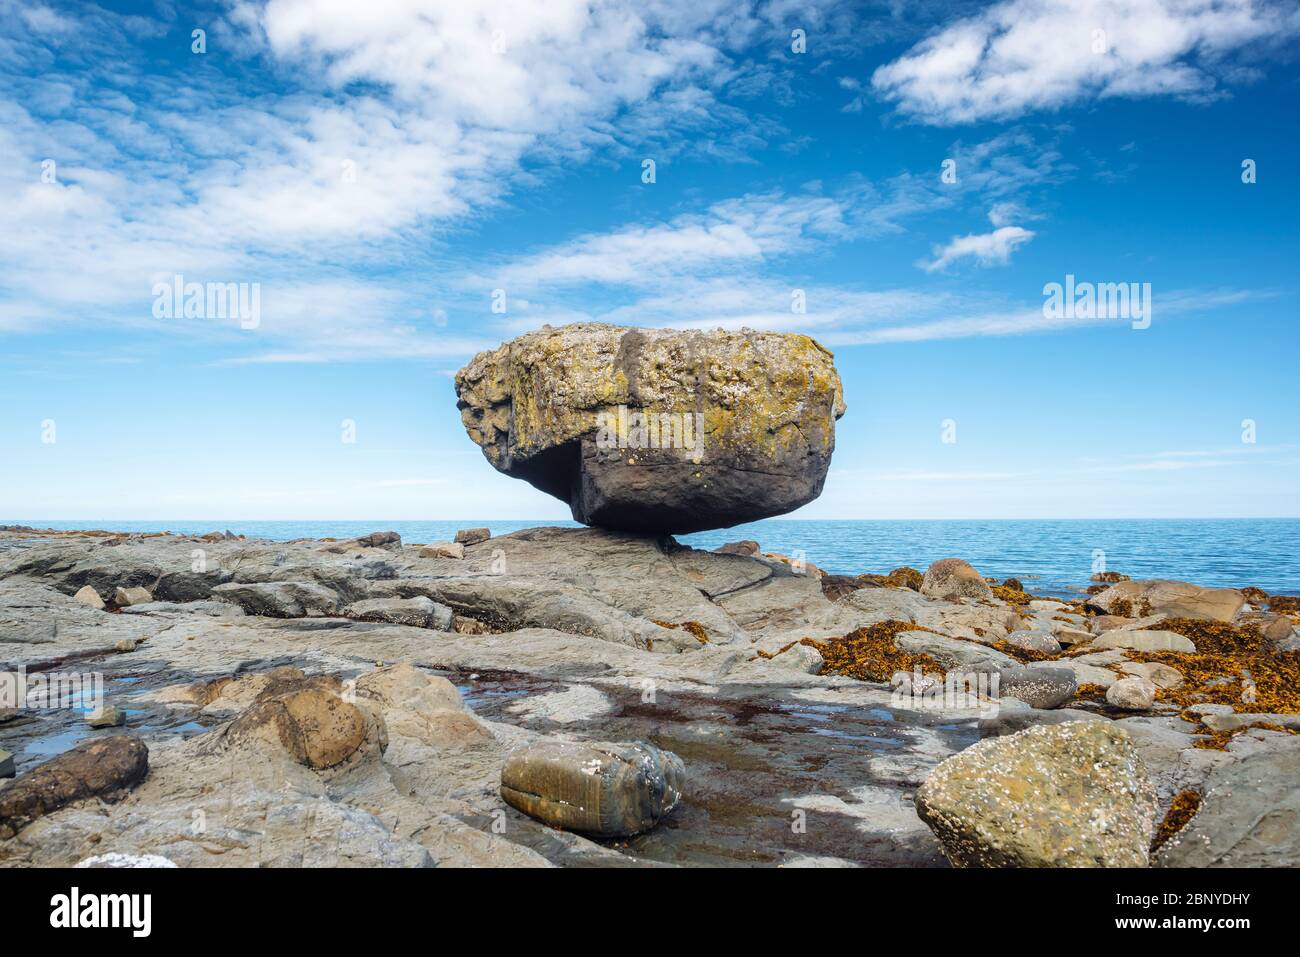 Balance Rock, a popular tourist destination in Haida Gwaii, British Columbia, Canada Stock Photo